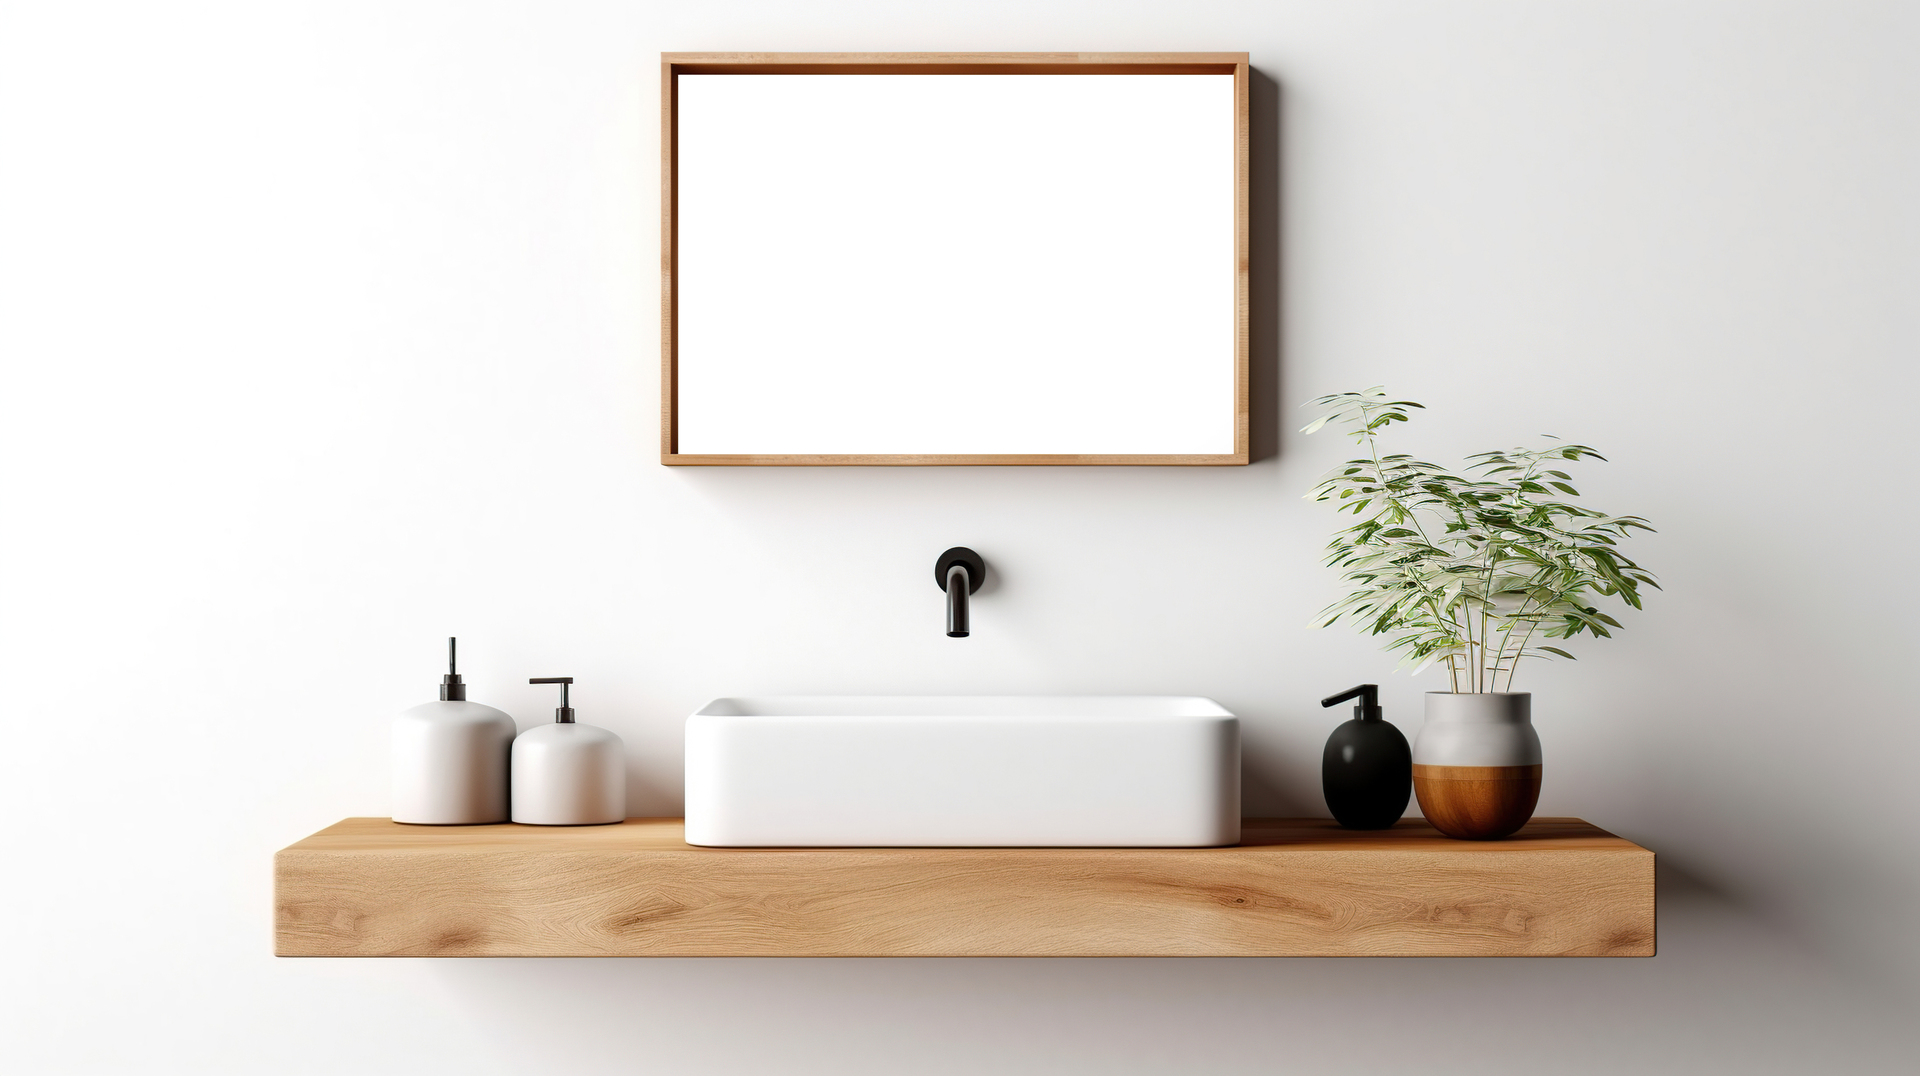 Na obrazku widoczna jest przestronna biała łazienka, w której dominuje eleganckie drewno. Drewniane akcenty doskonale kontrastują z jasną kolorystyką, dodając wnętrzu ciepła i przytulności. W połączeniu z nowoczesnymi elementami, taka kompozycja tworzy harmonijną i stylową przestrzeń łazienkową